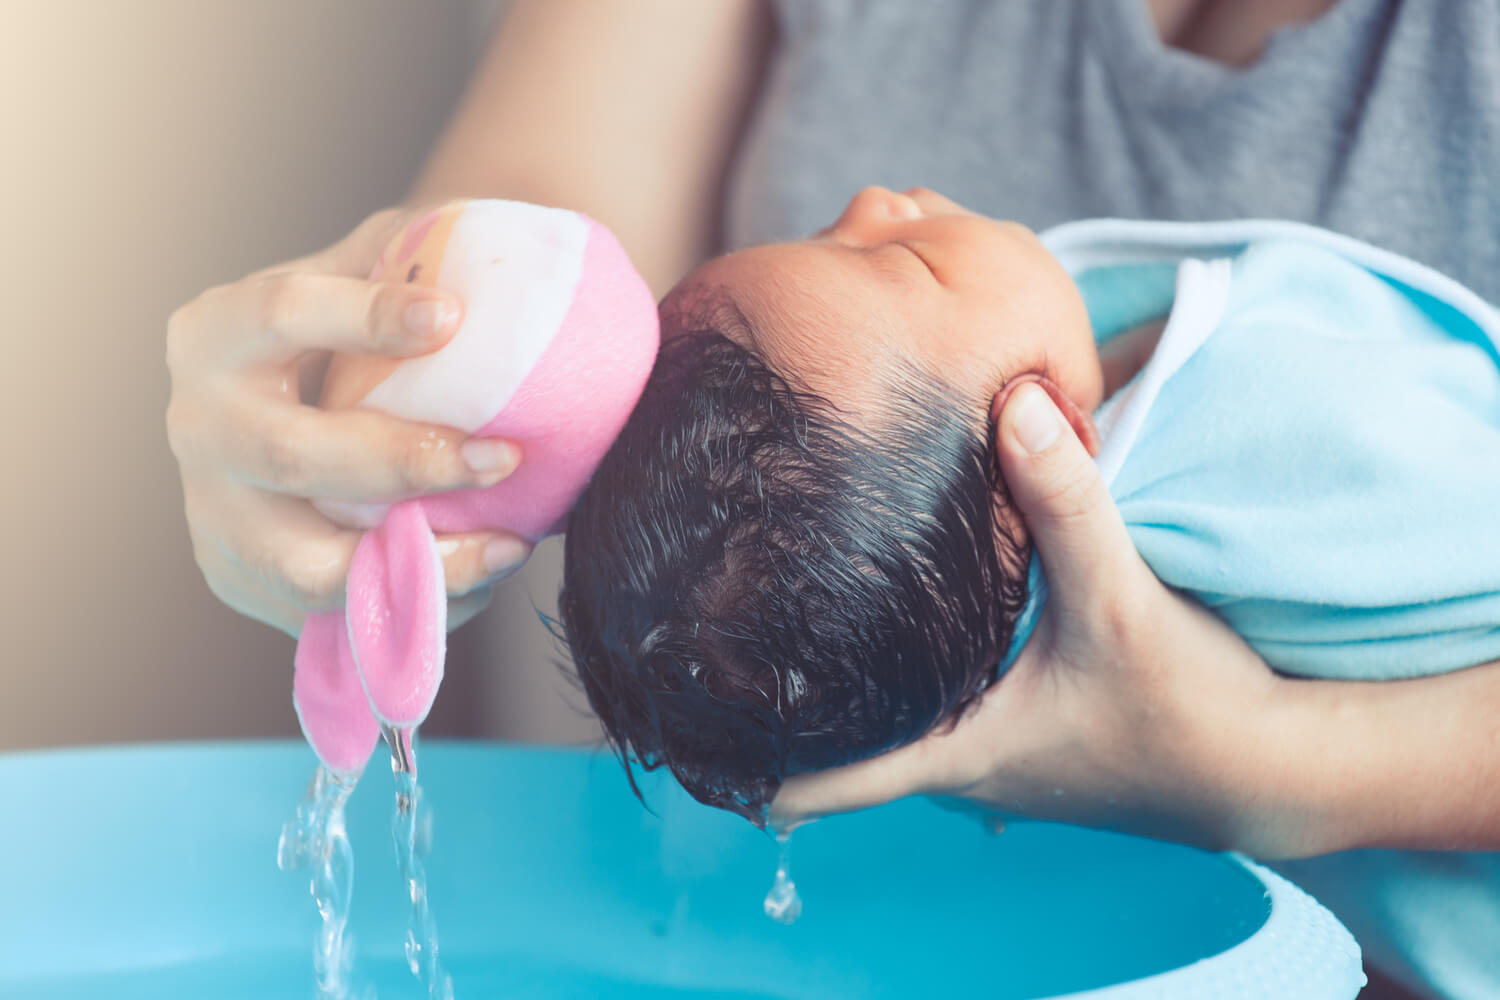 Sponge-Bathing Your Baby